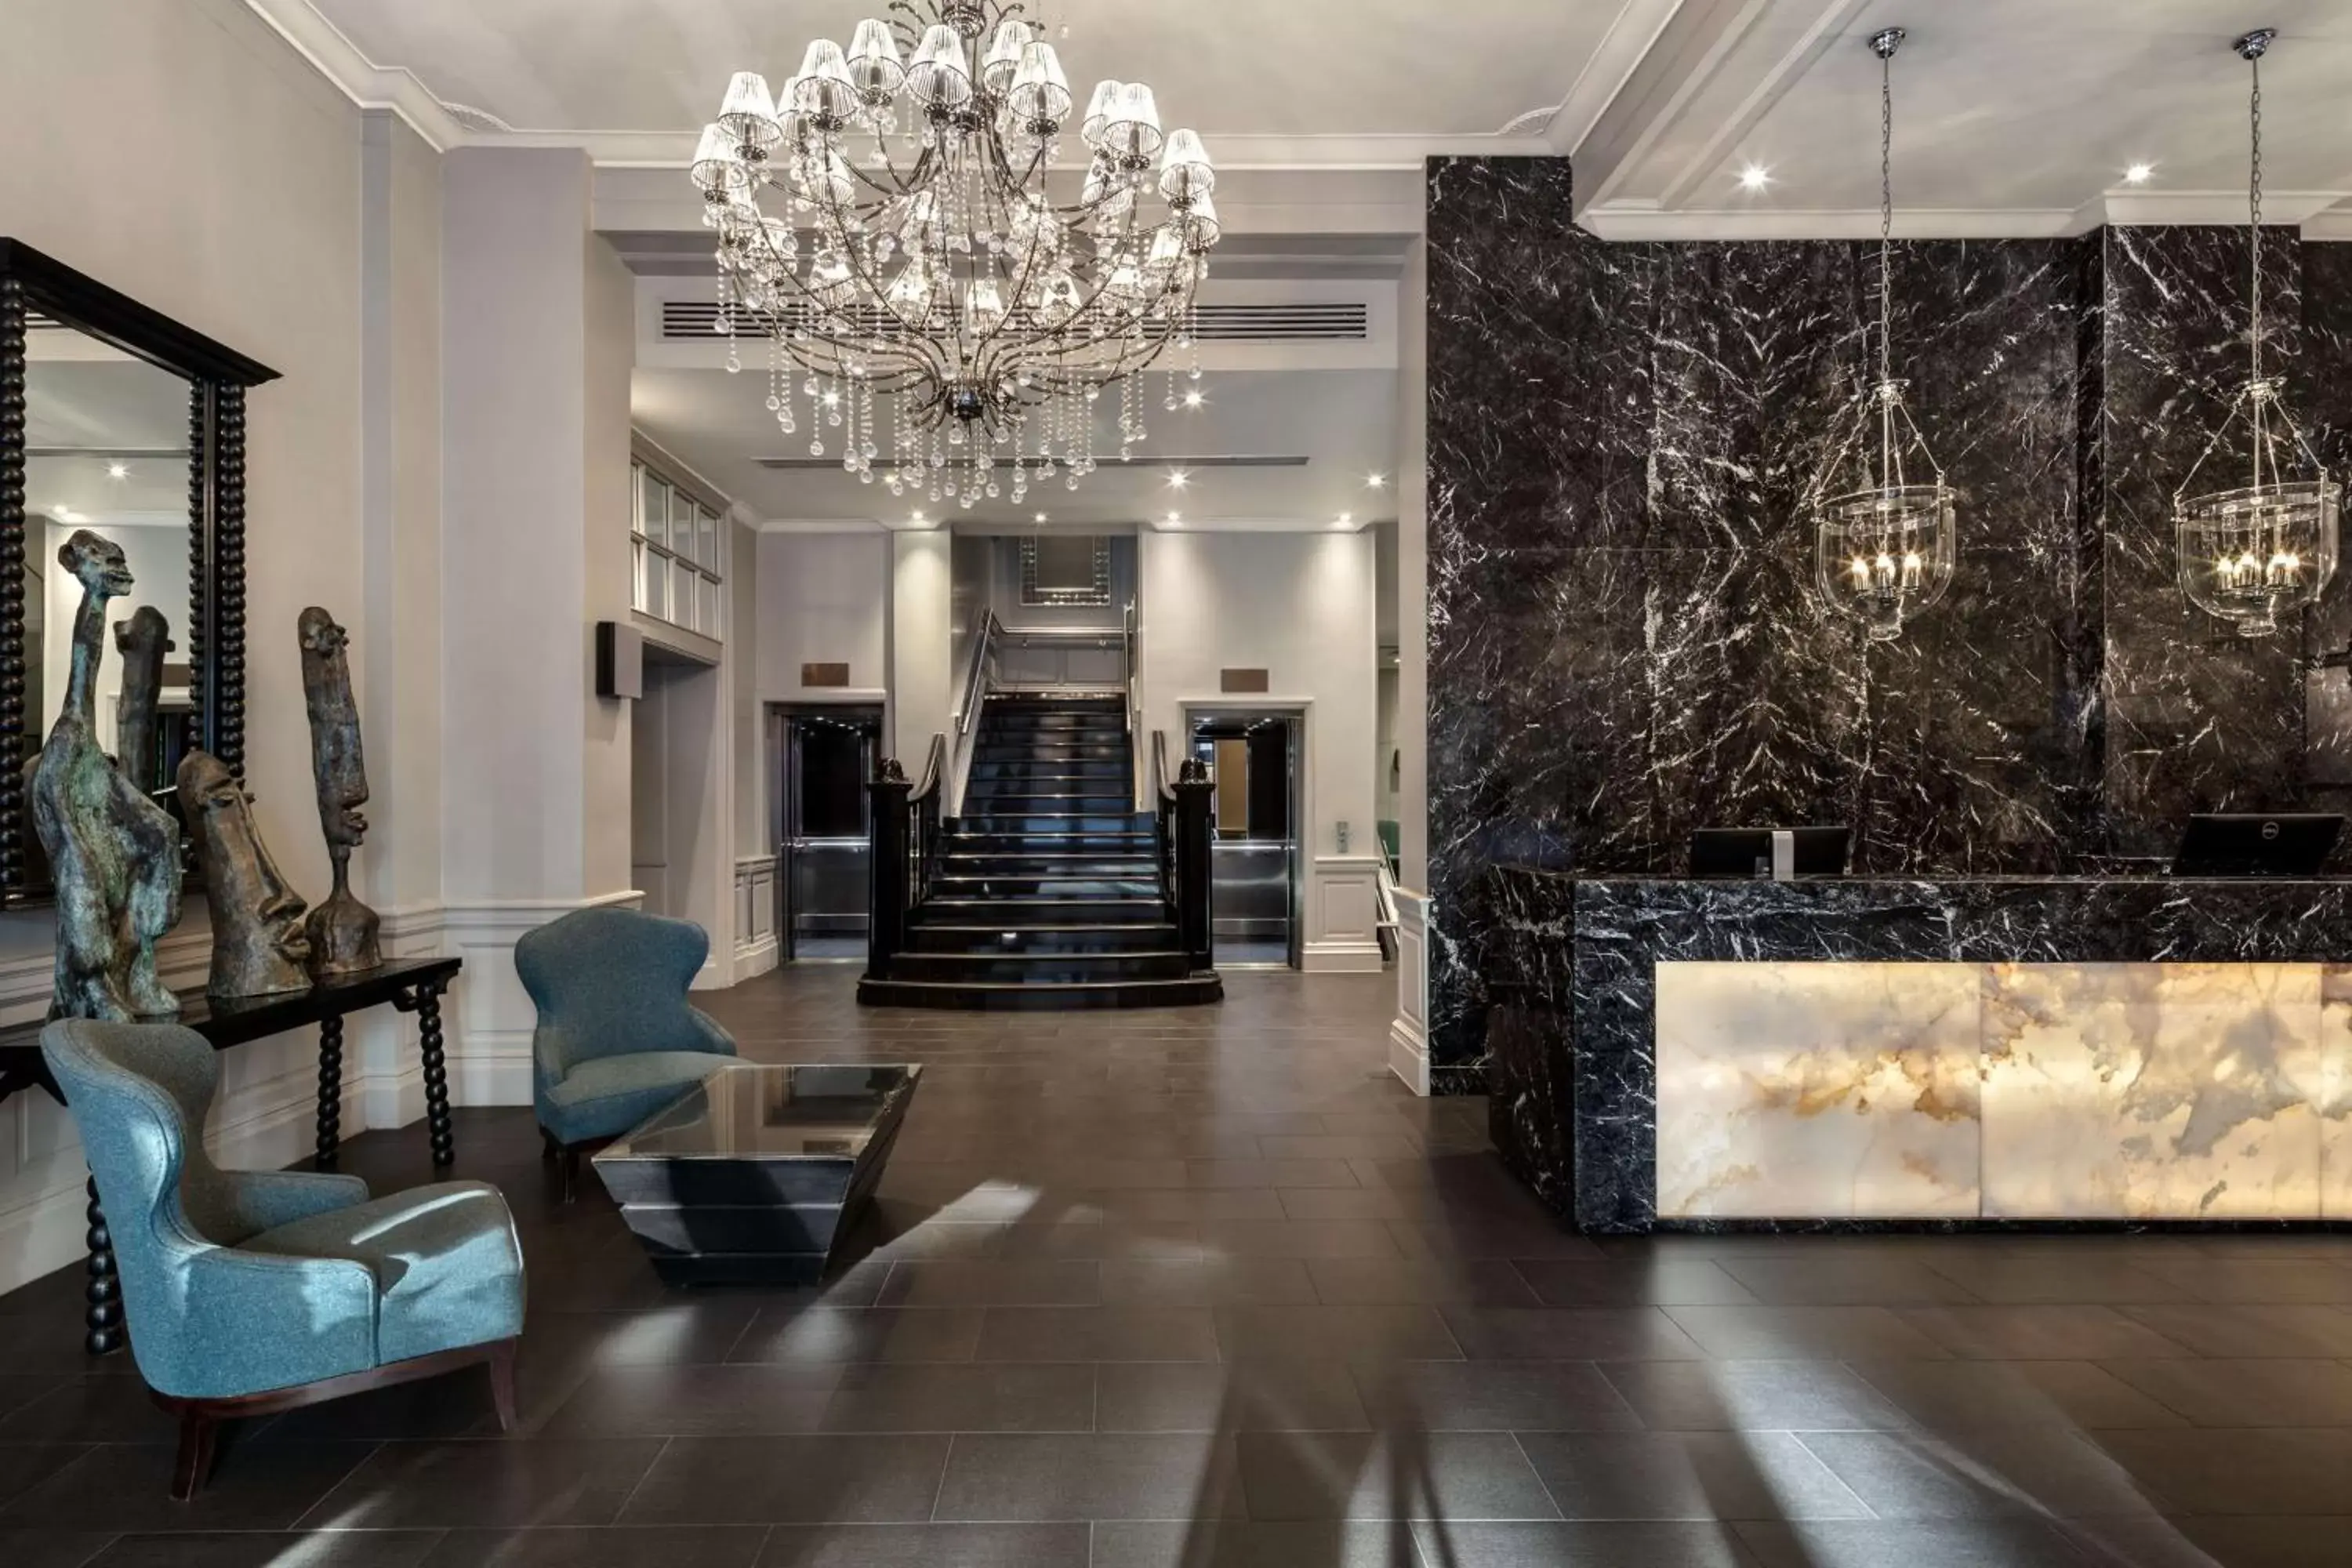 Lobby or reception, Lobby/Reception in Radisson Blu Edwardian Grafton Hotel, London